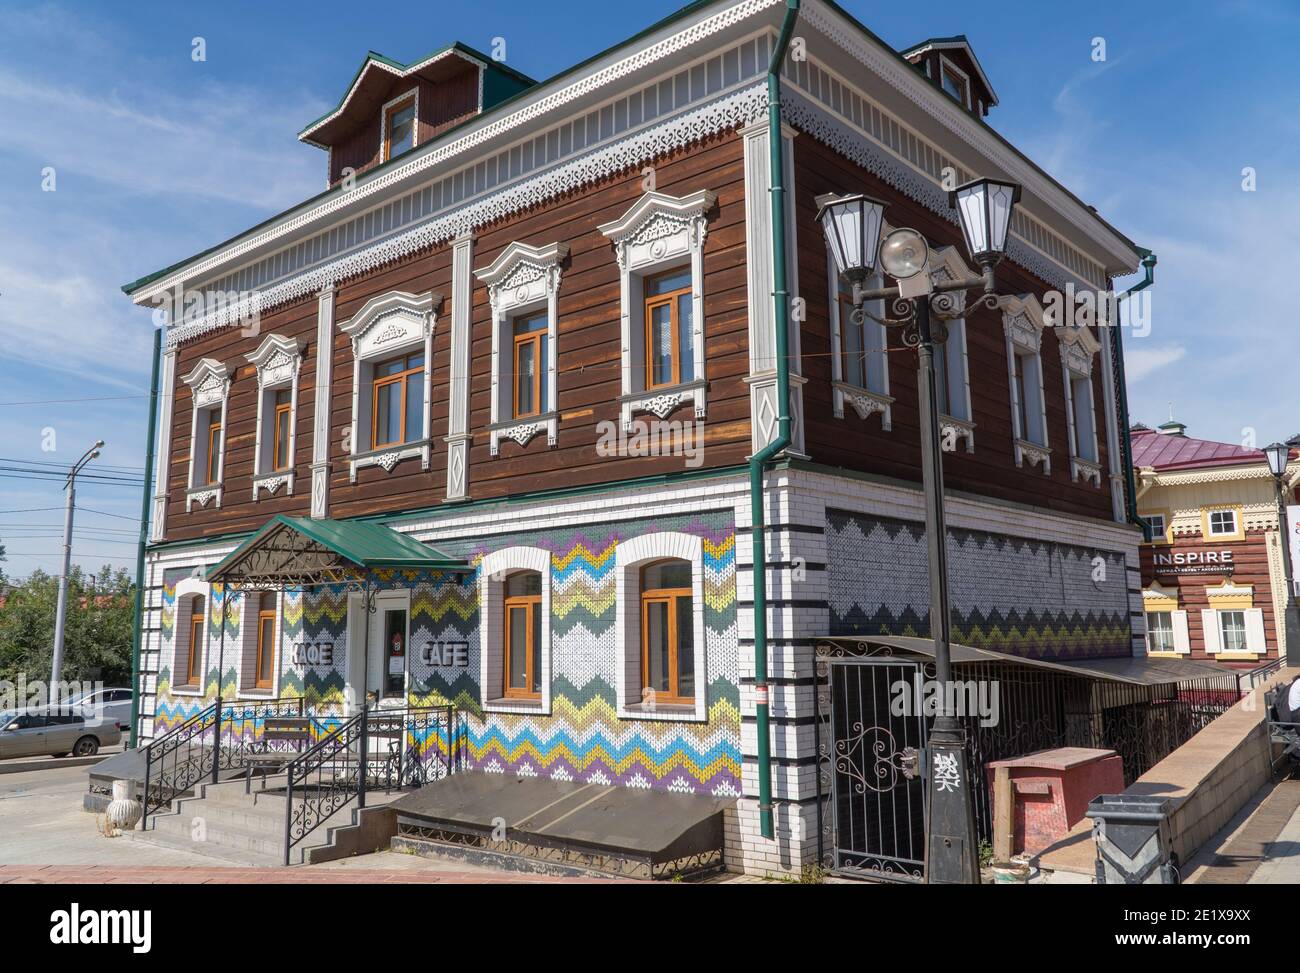 Russland, Irkutsk, August 2020: Café im russischen Stil. Russisches Restaurant, Tavernengebäude. Stockfoto